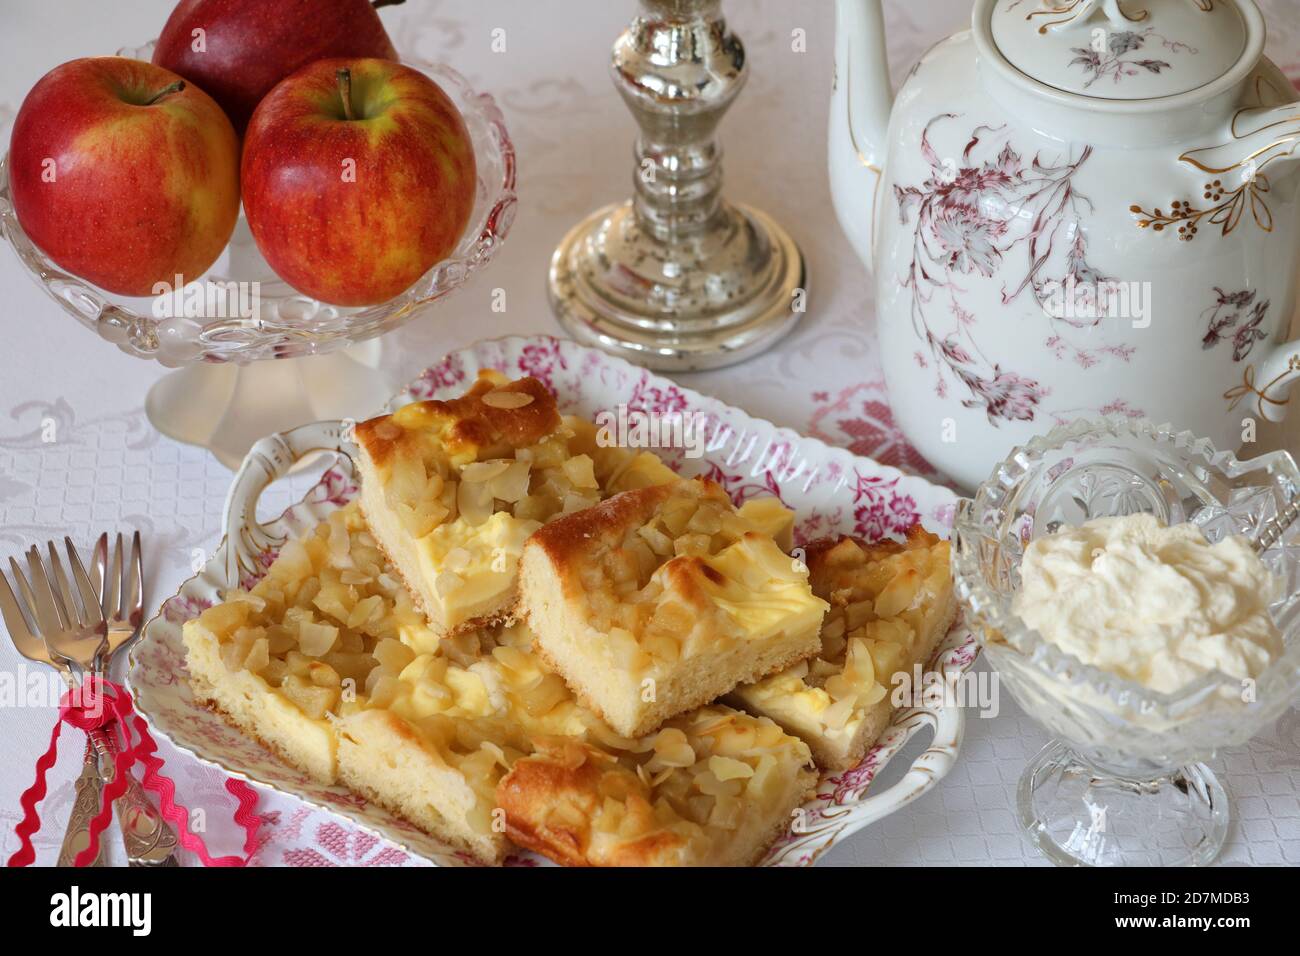 Tischdekoration mit Apfelkuchen, frischen Äpfeln und Kaffeekanne Stockfoto